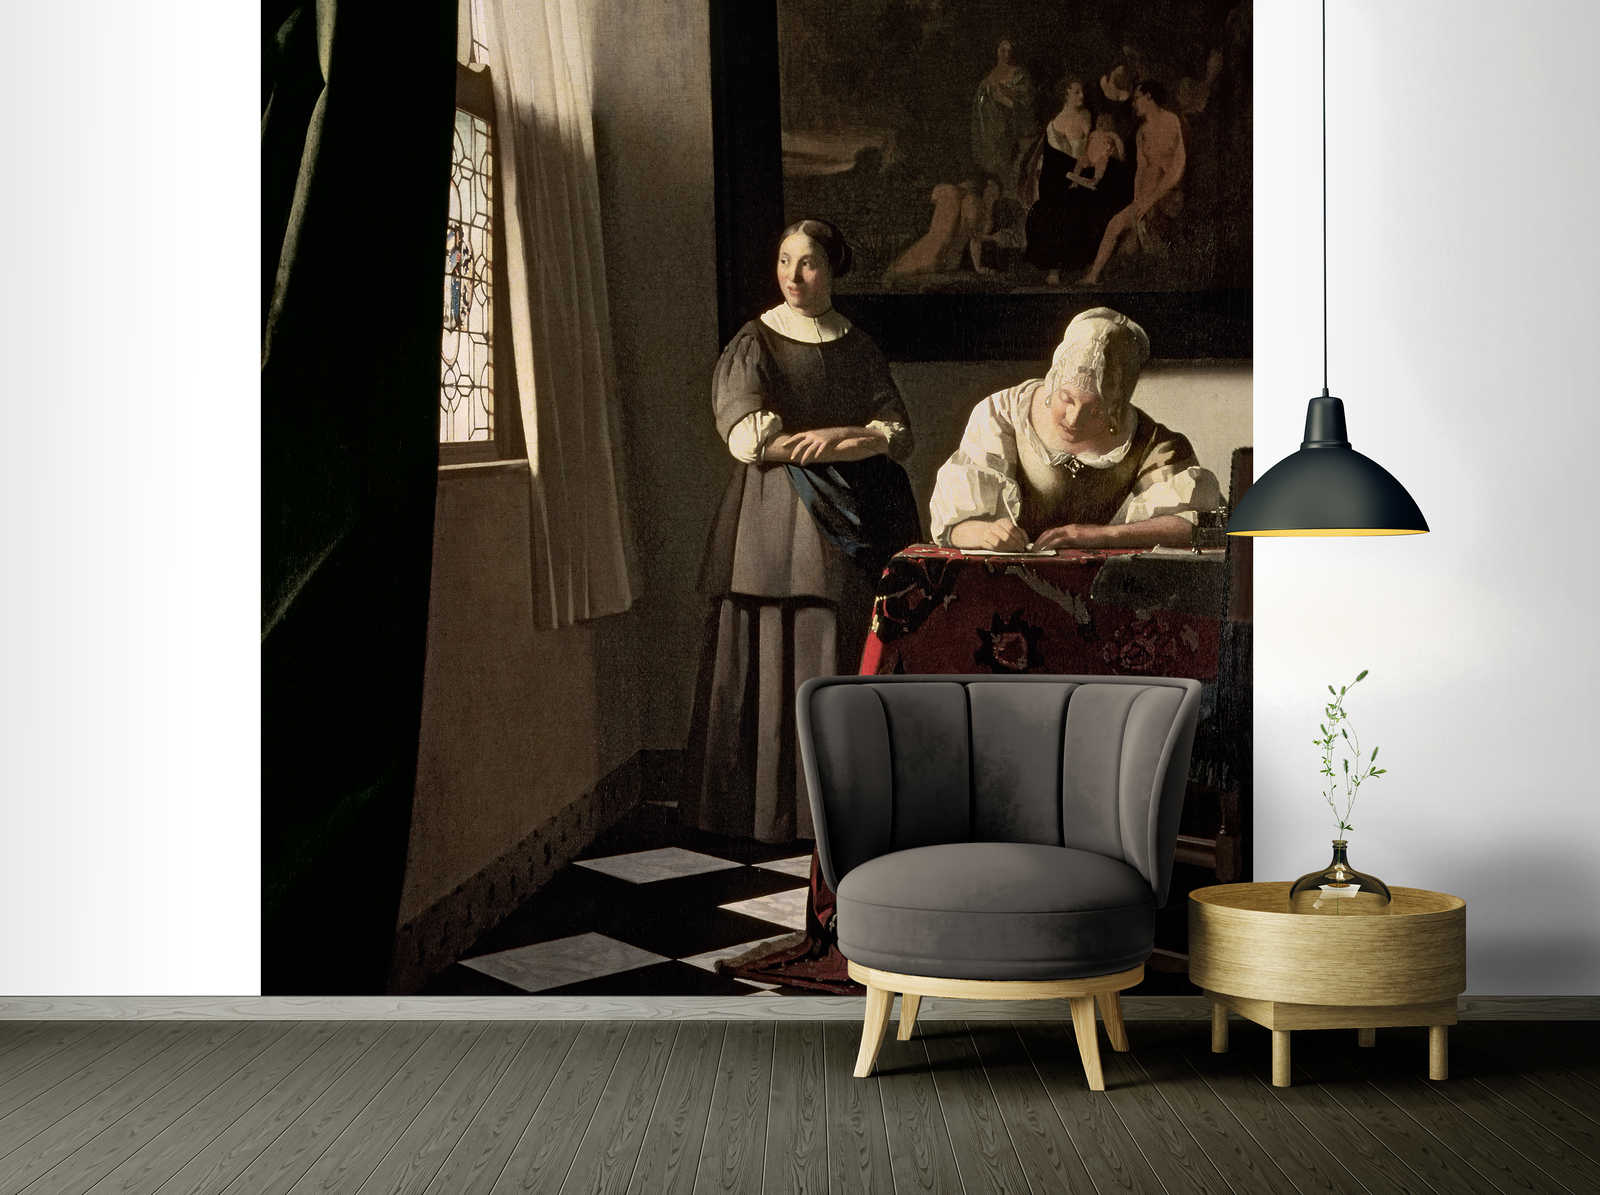             Fototapete "Dame die mit Magd einen Brief schreibt" von Jan Vermeer
        